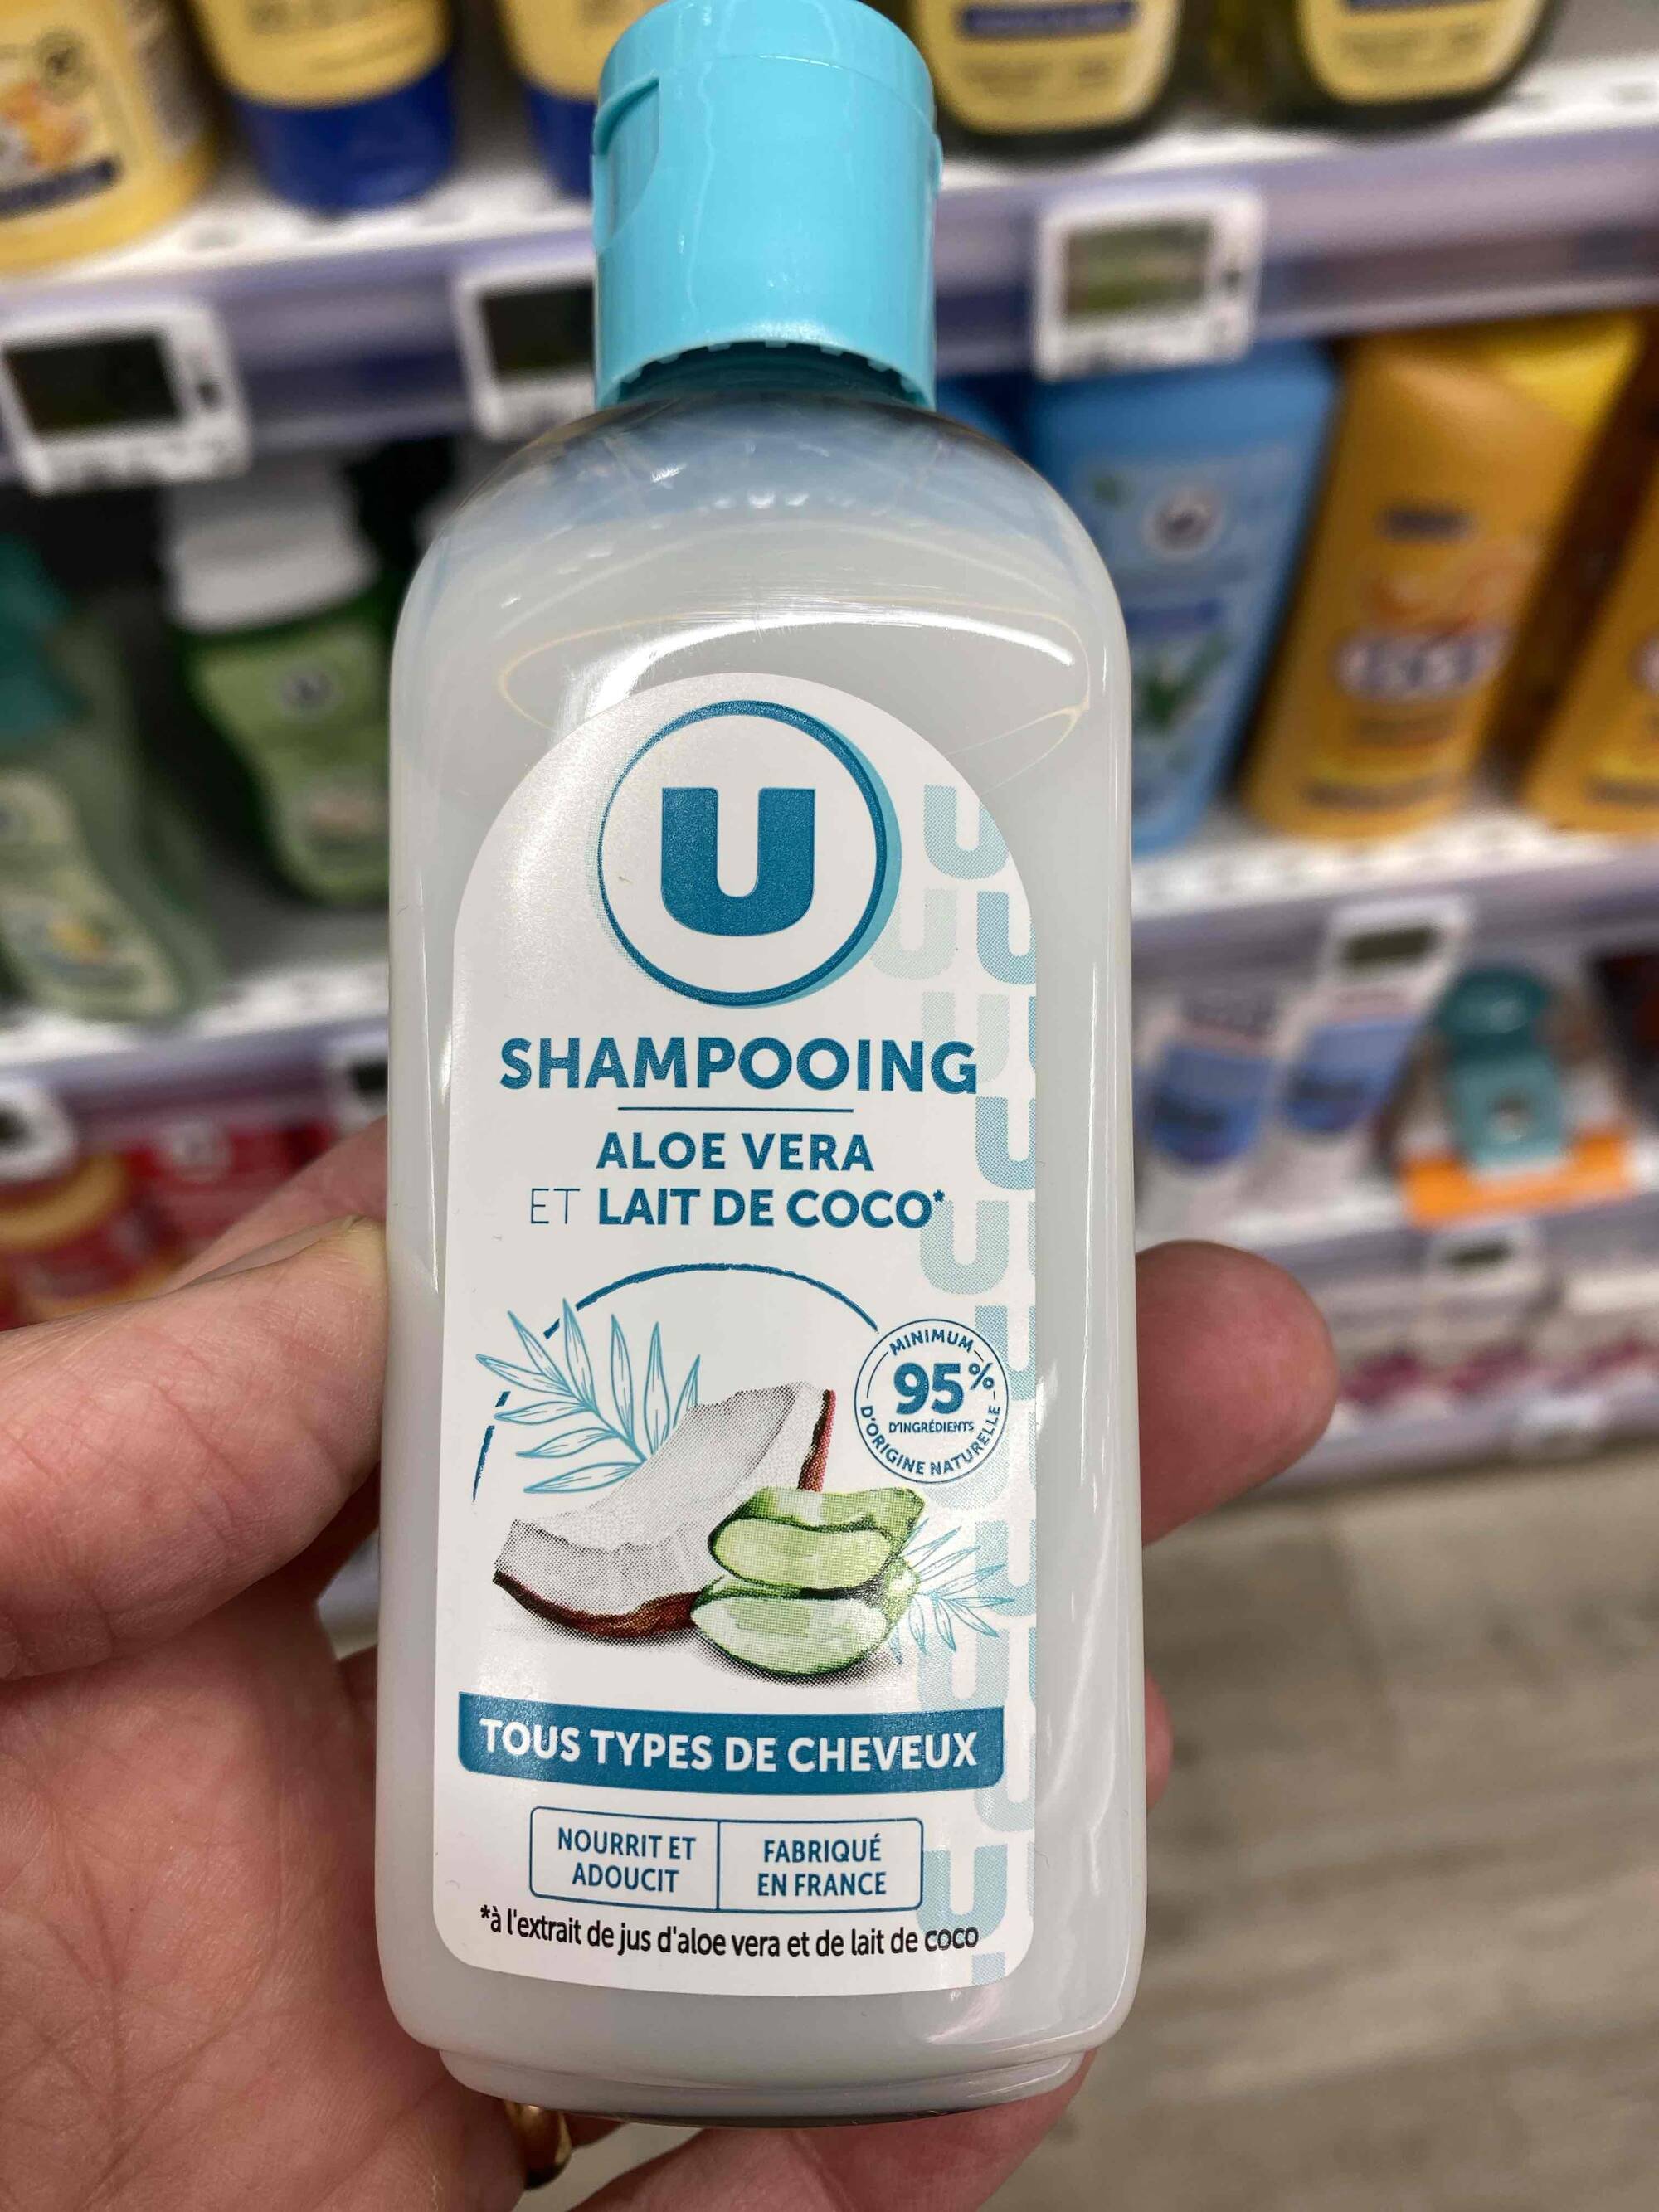 U - Shampooing aloe vera et lait de coco